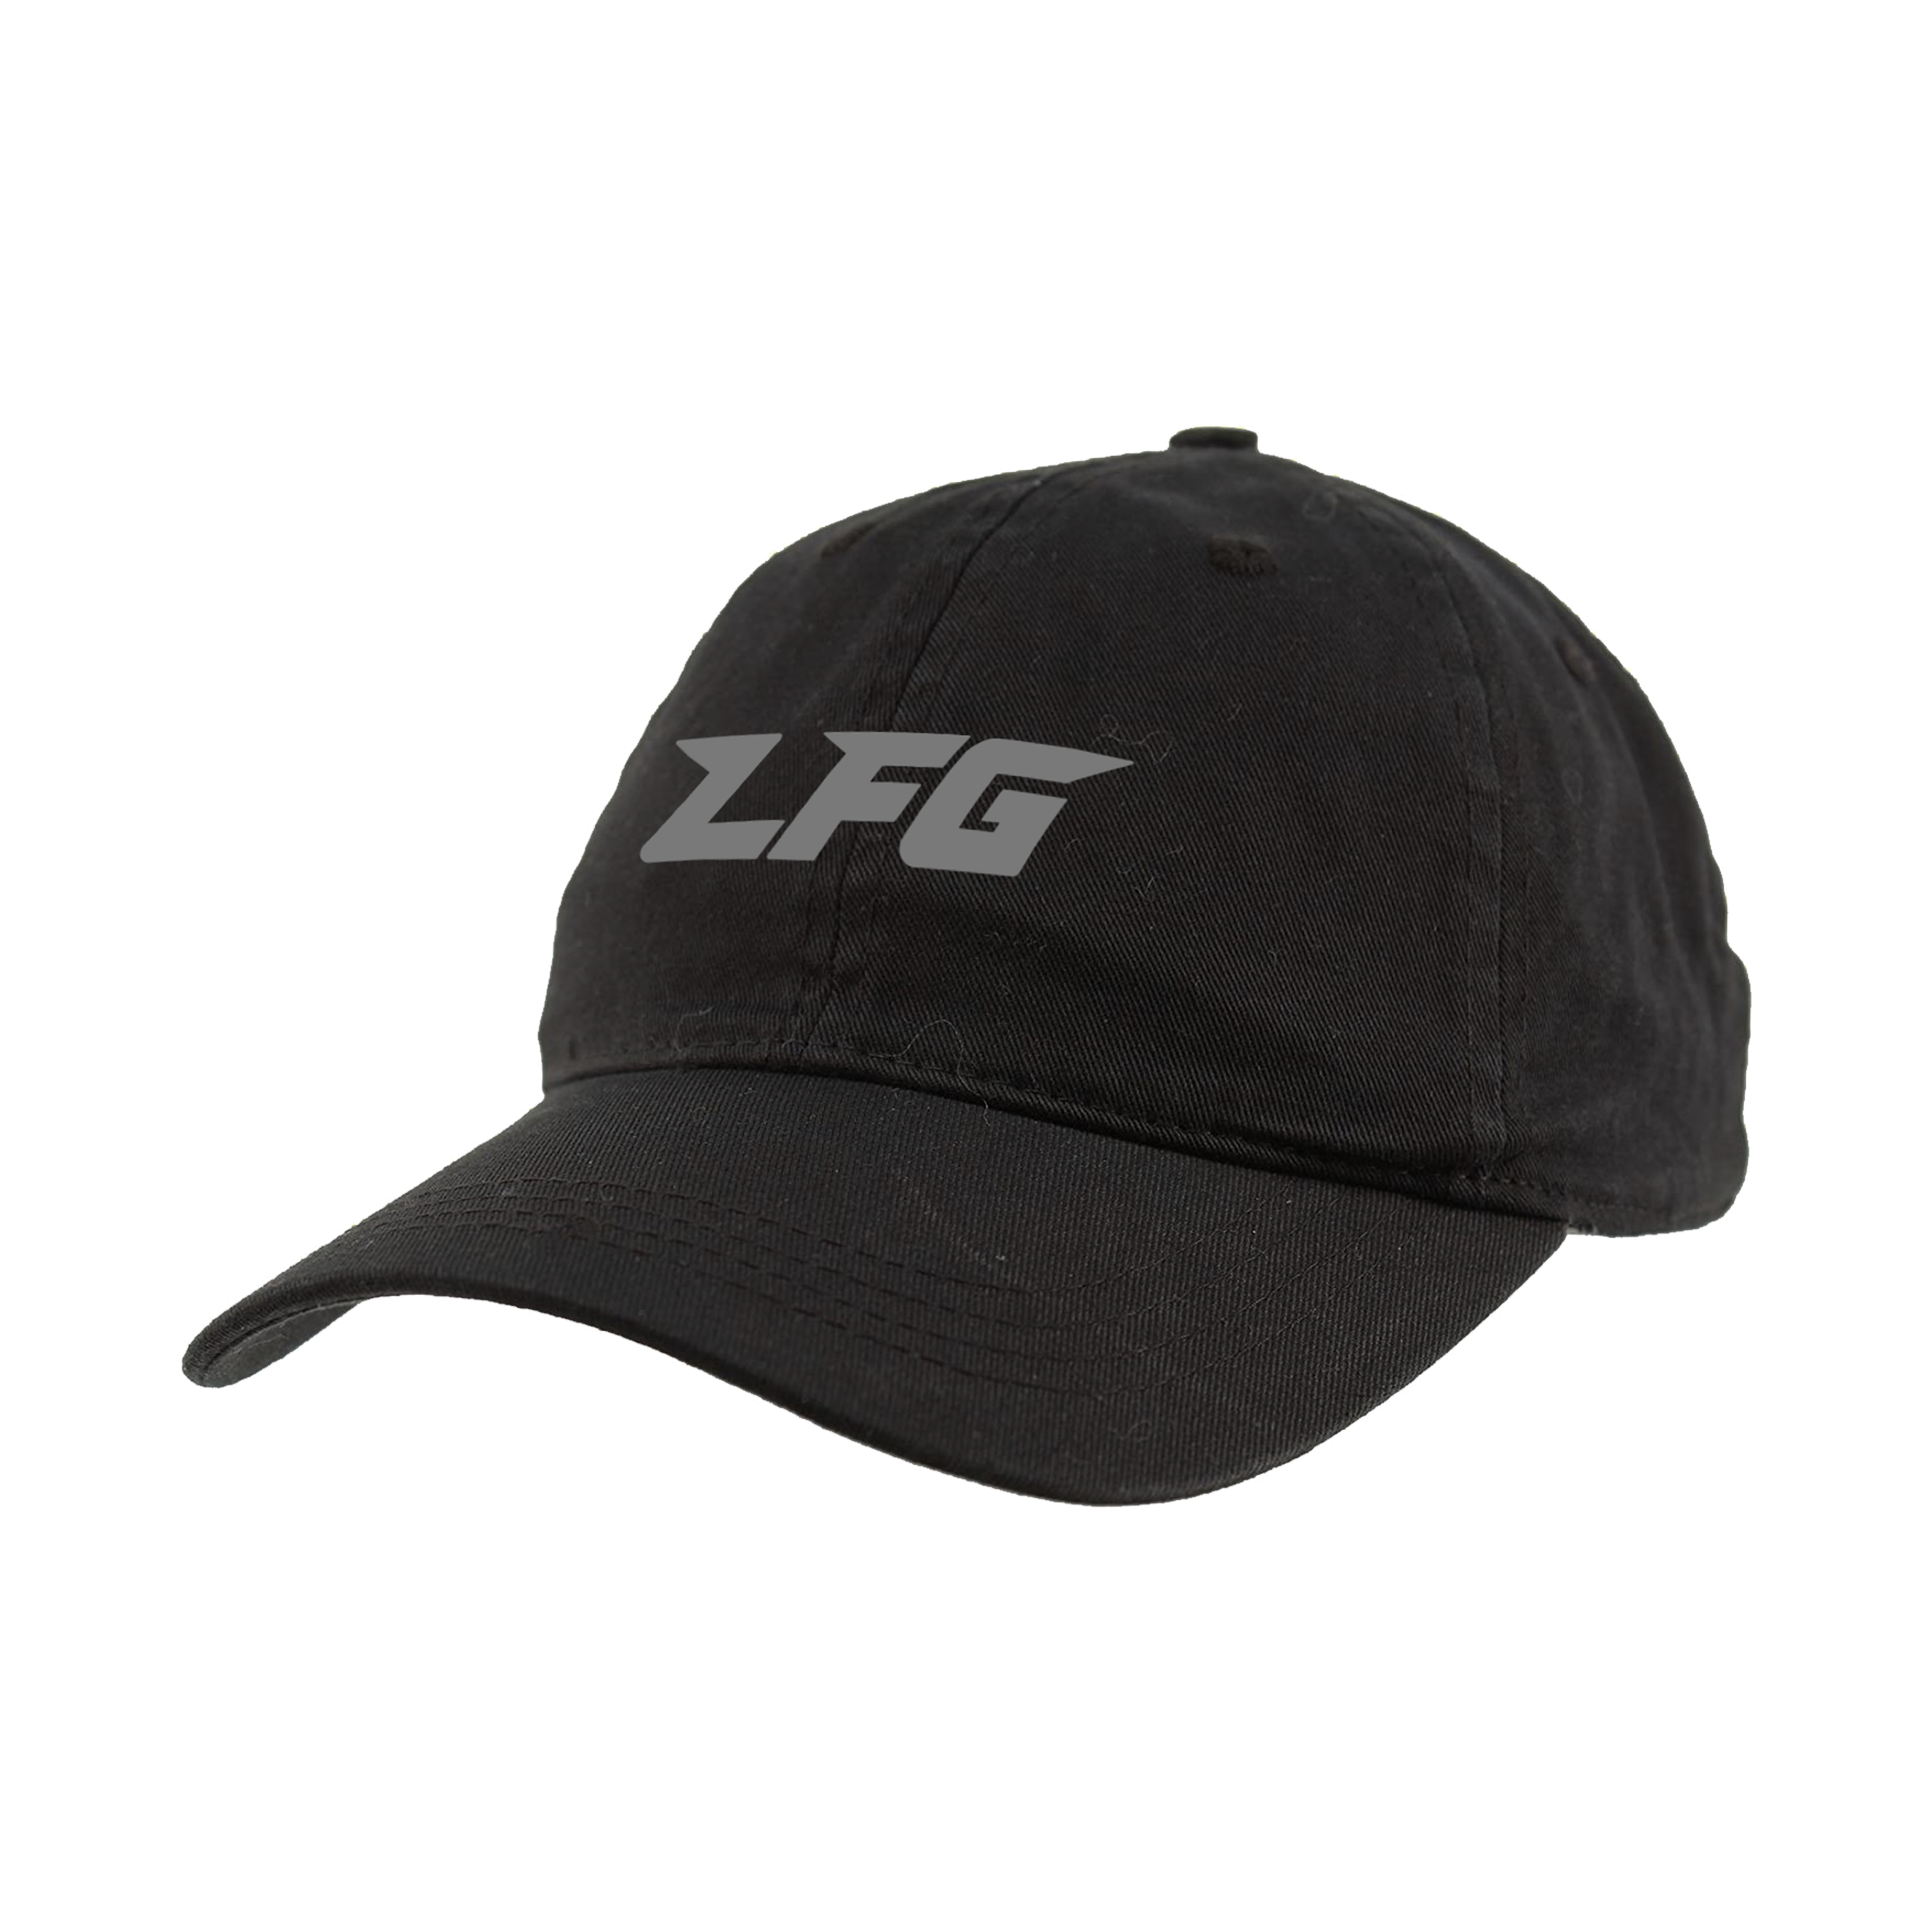 LFG Cap